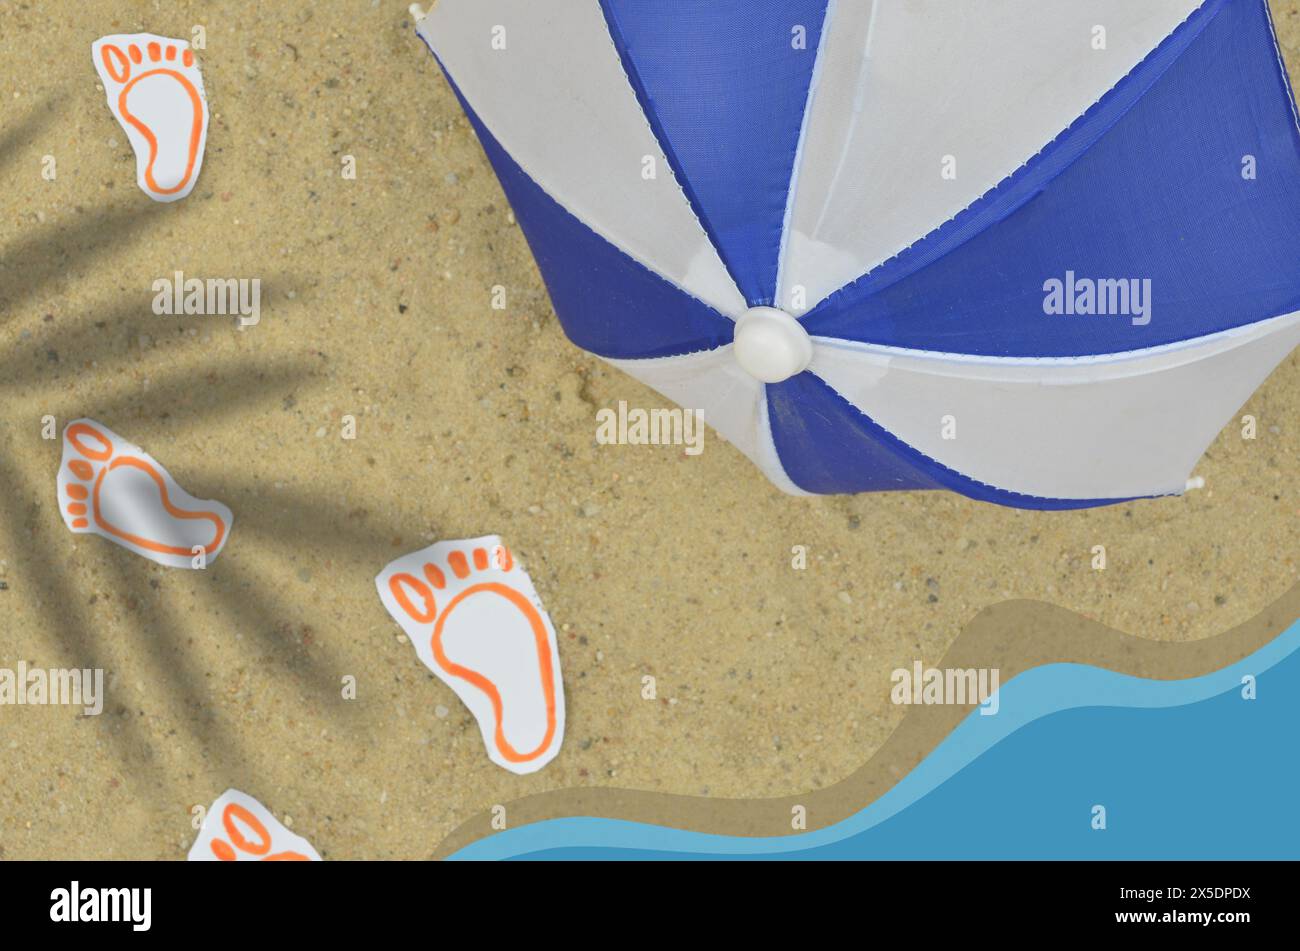 Foto gemischt mit Zeichnungen und Grafiken: Sonnenschirm, gezeichnete Fußabdrücke und ein Meer als Grafik. Sommerstimmung. Stockfoto